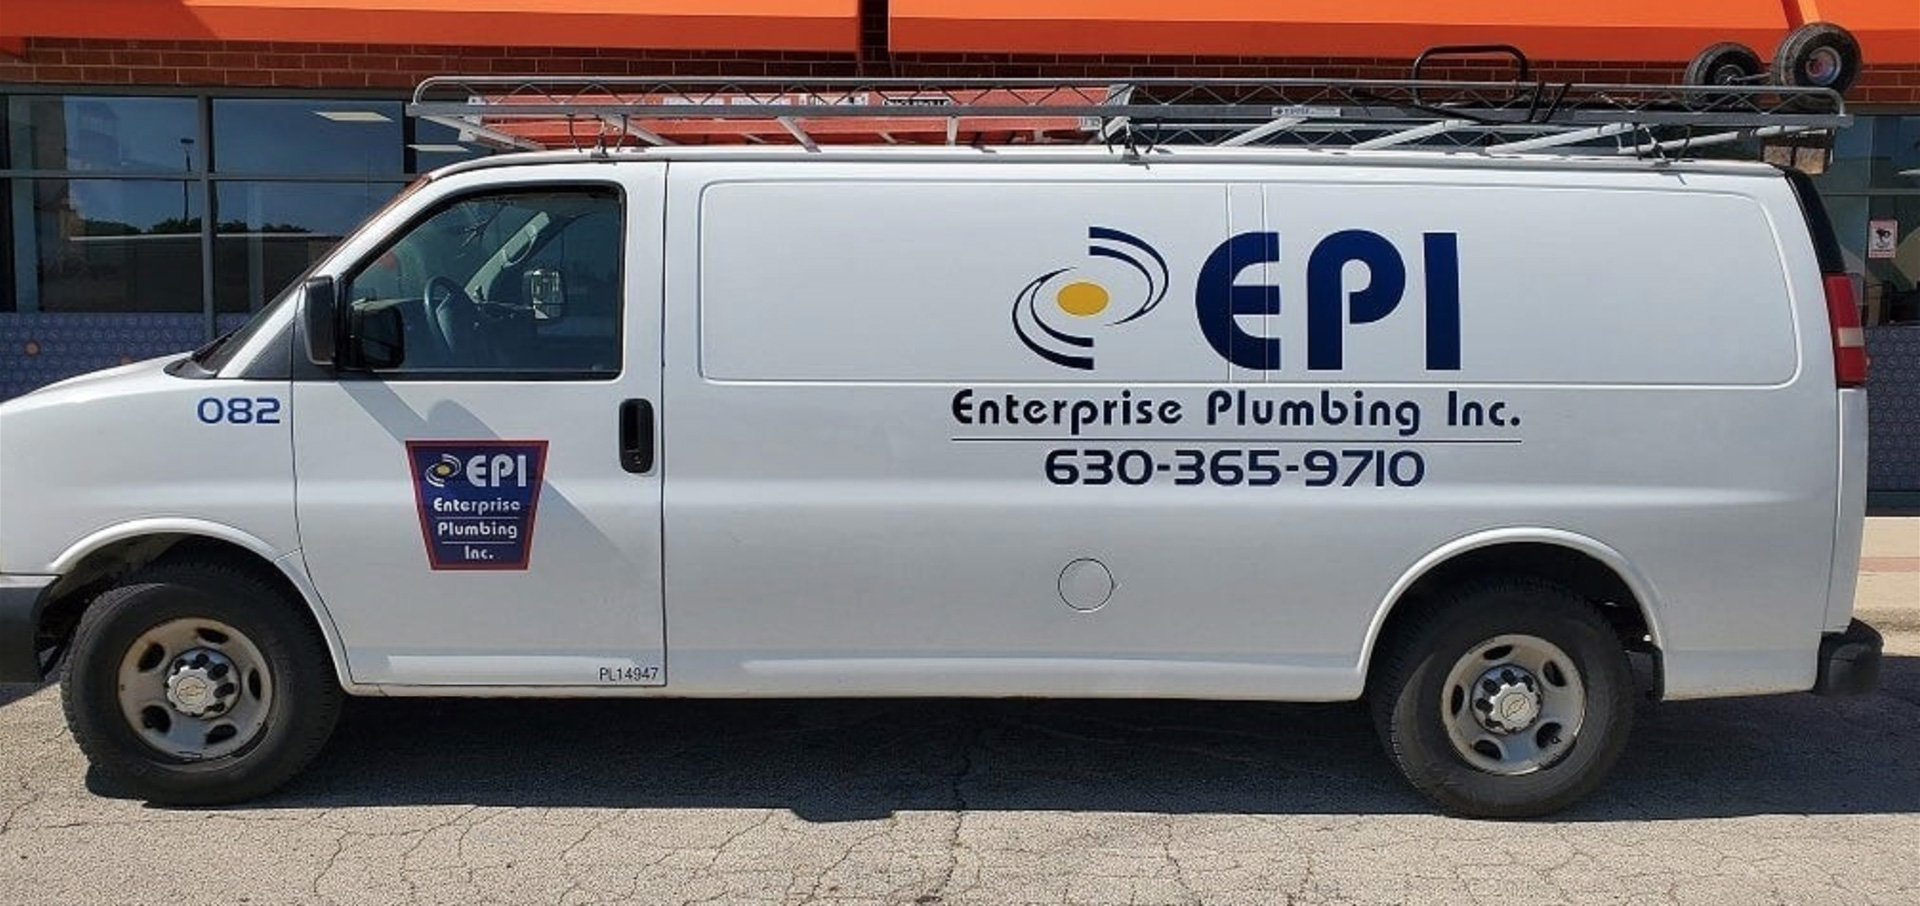 Enterprise Plumbing White Van